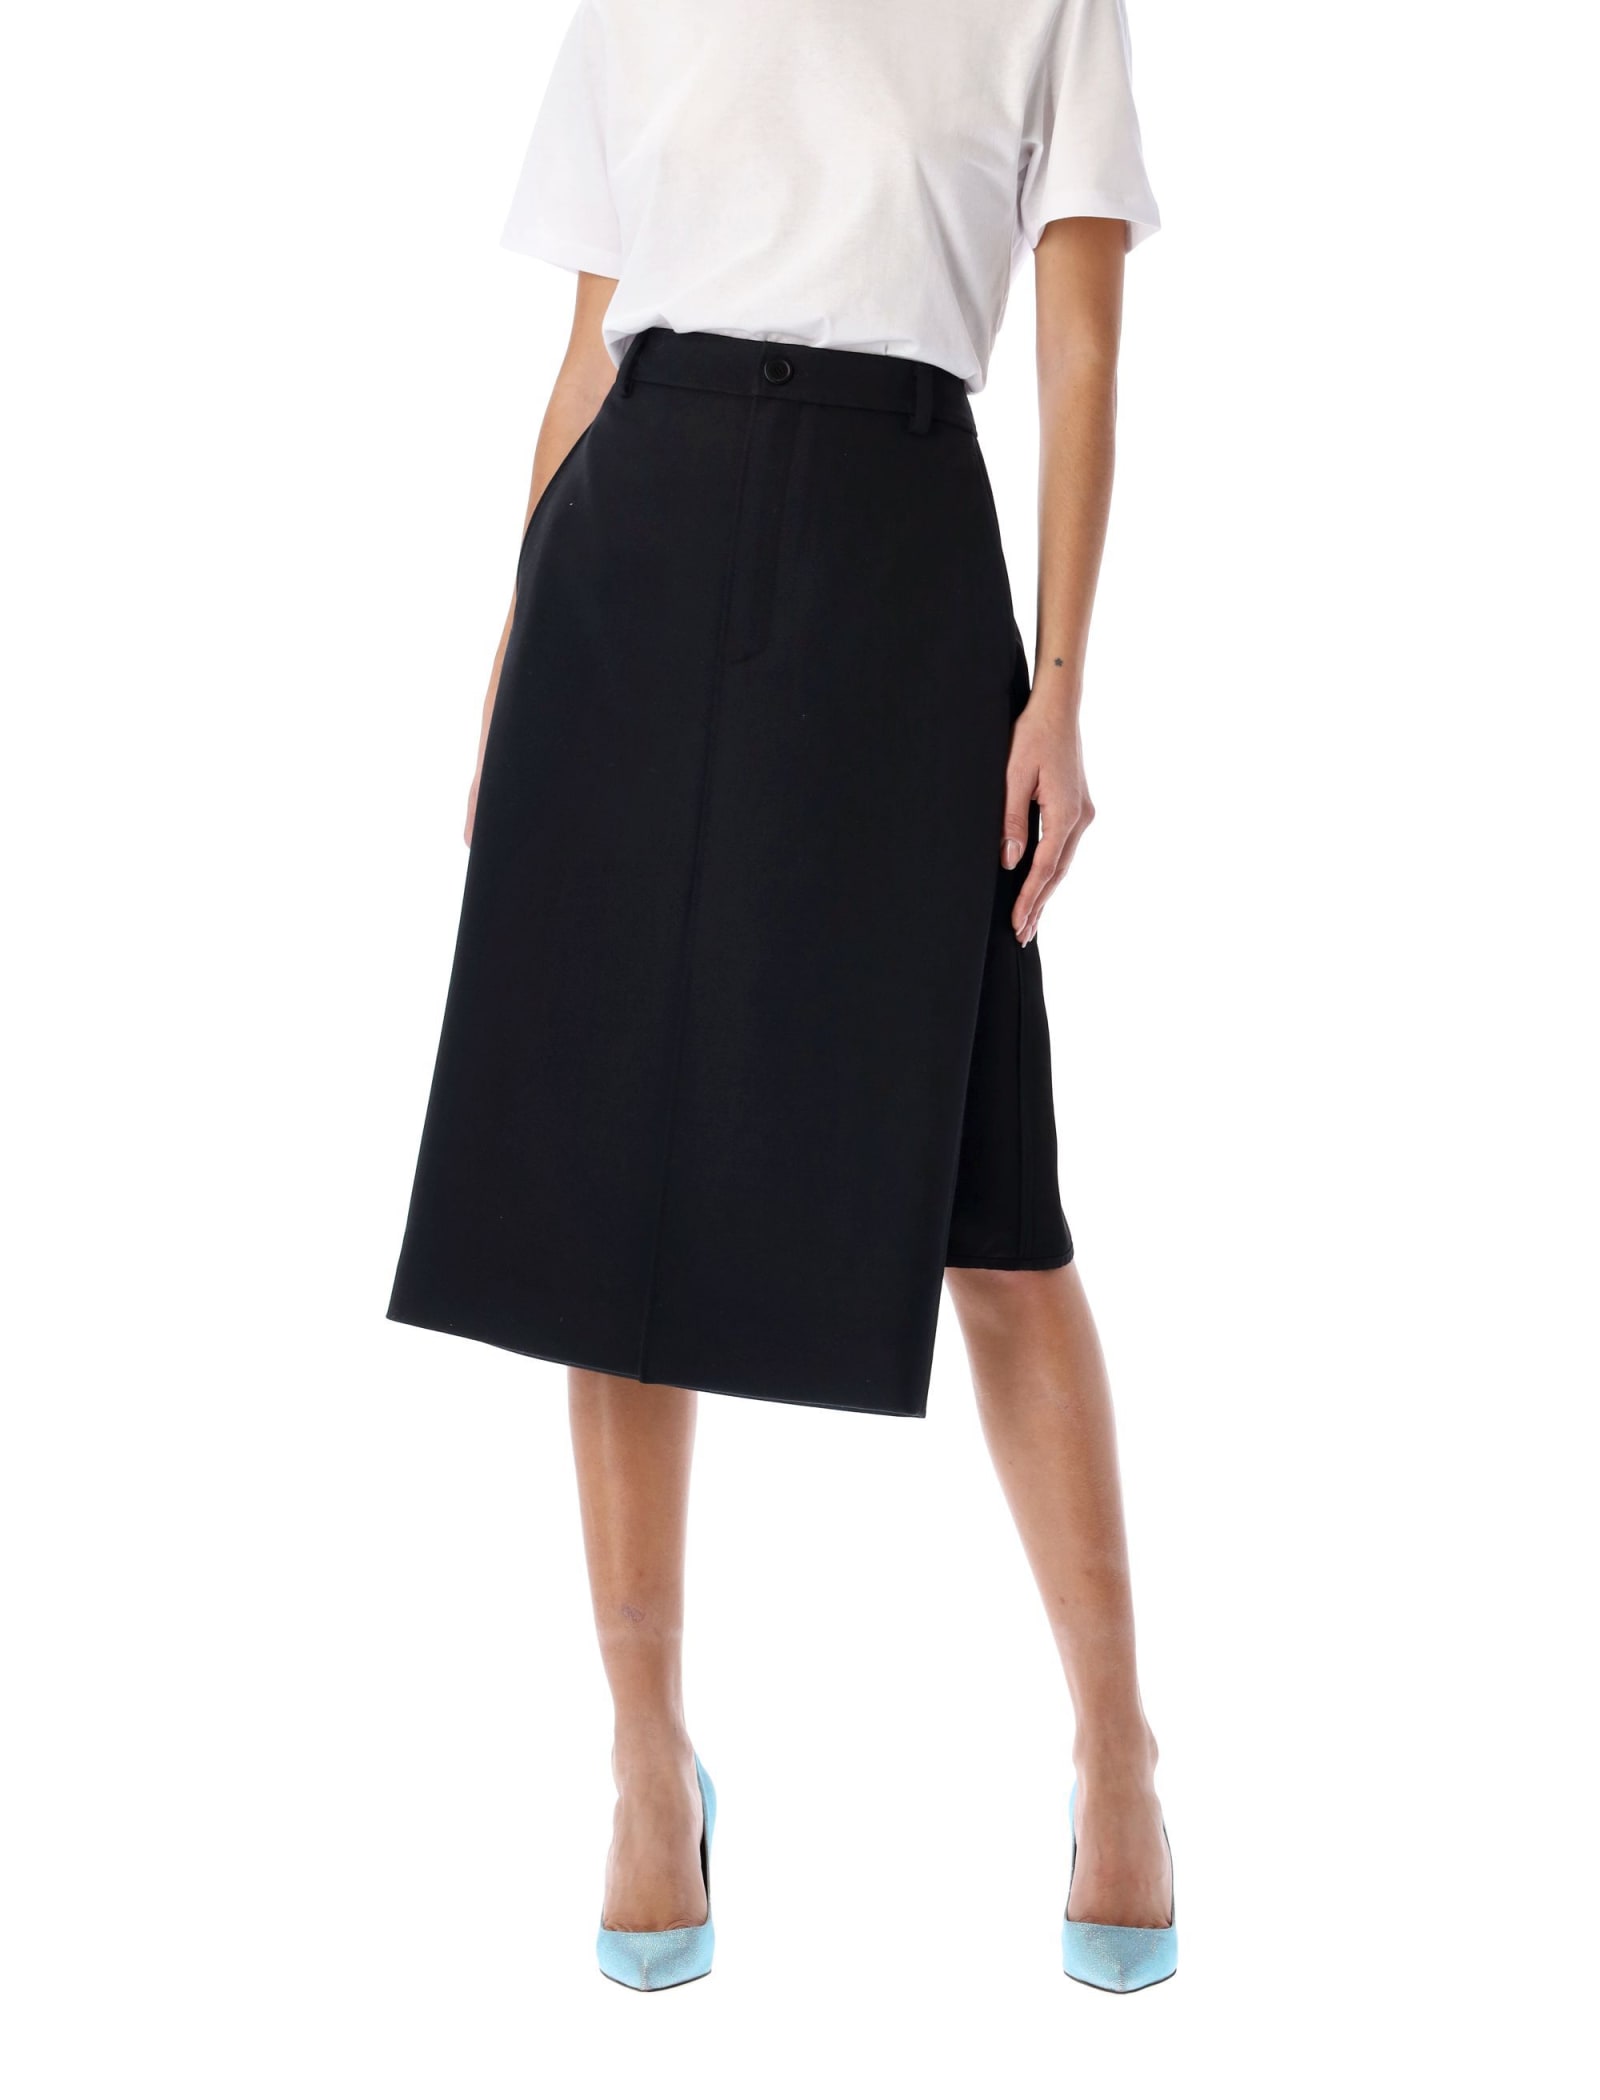 Balenciaga Wool And Satin Pencil Skirt